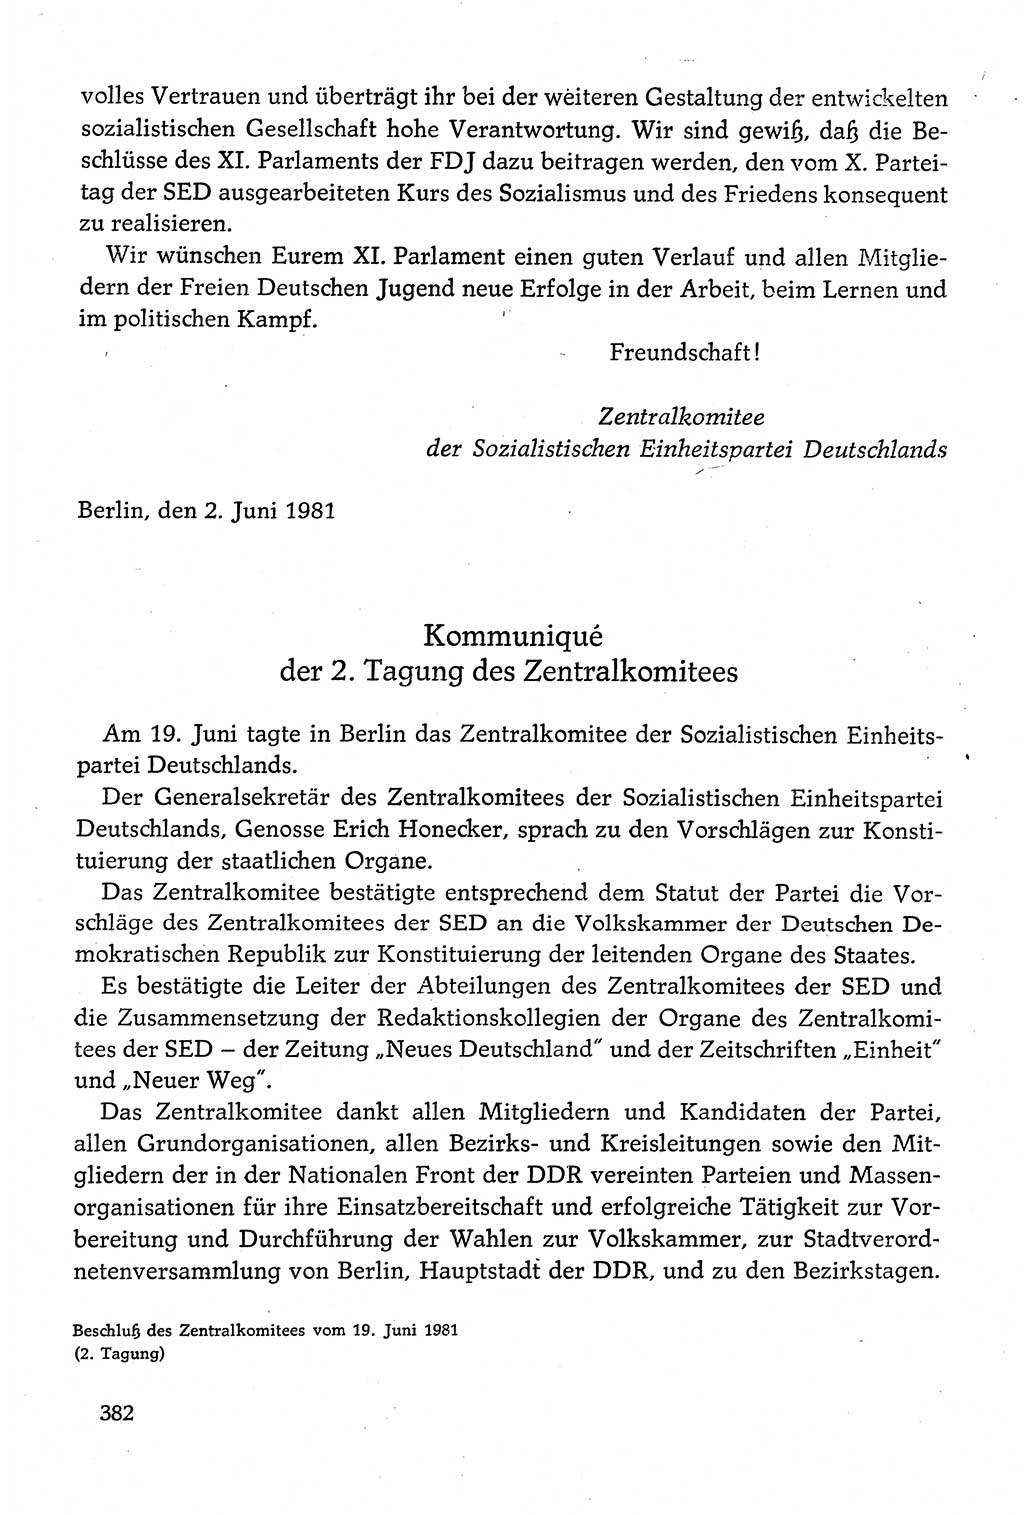 Dokumente der Sozialistischen Einheitspartei Deutschlands (SED) [Deutsche Demokratische Republik (DDR)] 1980-1981, Seite 382 (Dok. SED DDR 1980-1981, S. 382)